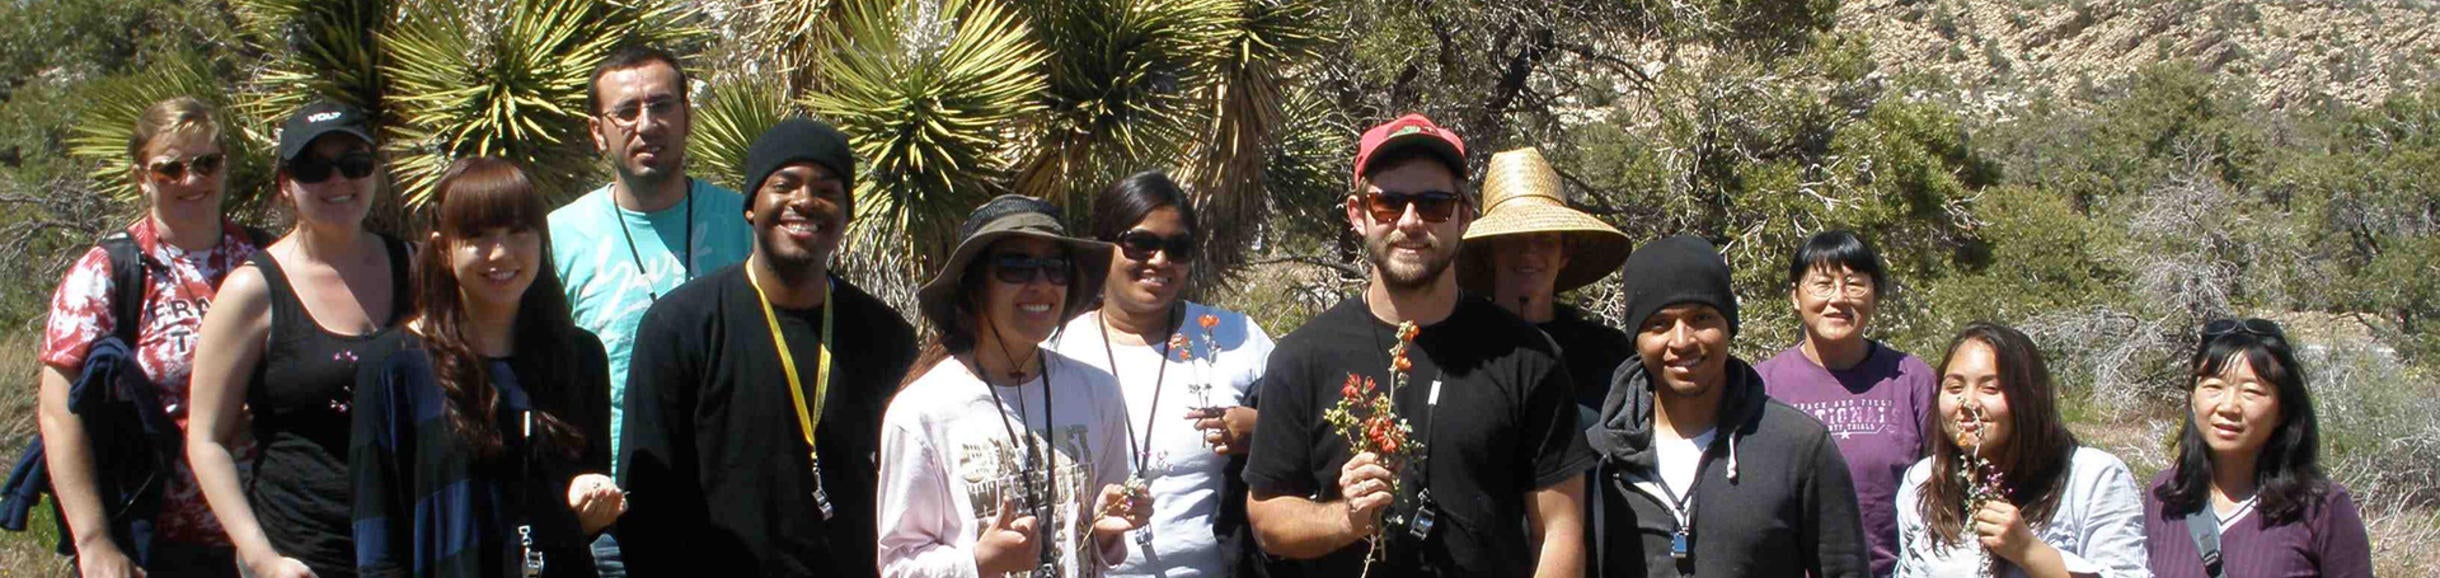 Plant Biology undergrads in the desert (c) UCR